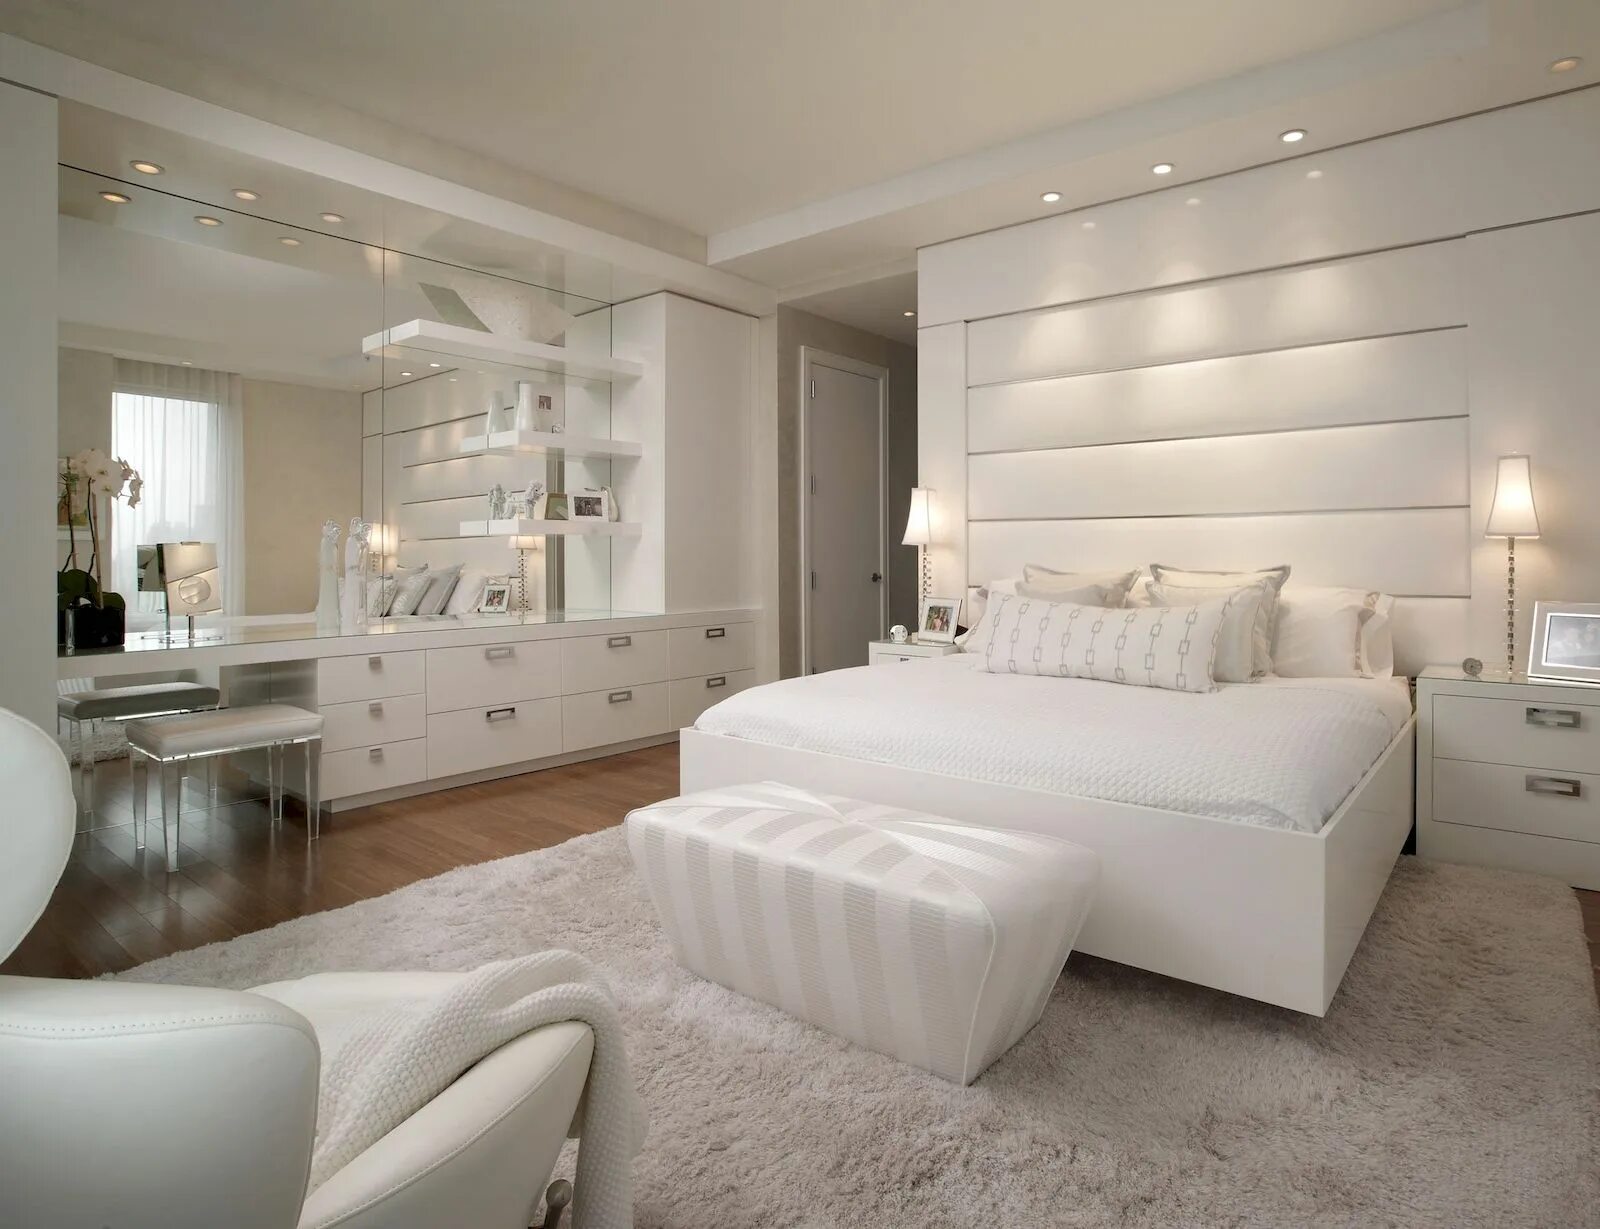 Мебель в квартире спальня. Спальня в белых тонах. Спальня в современном стиле. Спальня в светлых тонах. Красивая стильная спальня.